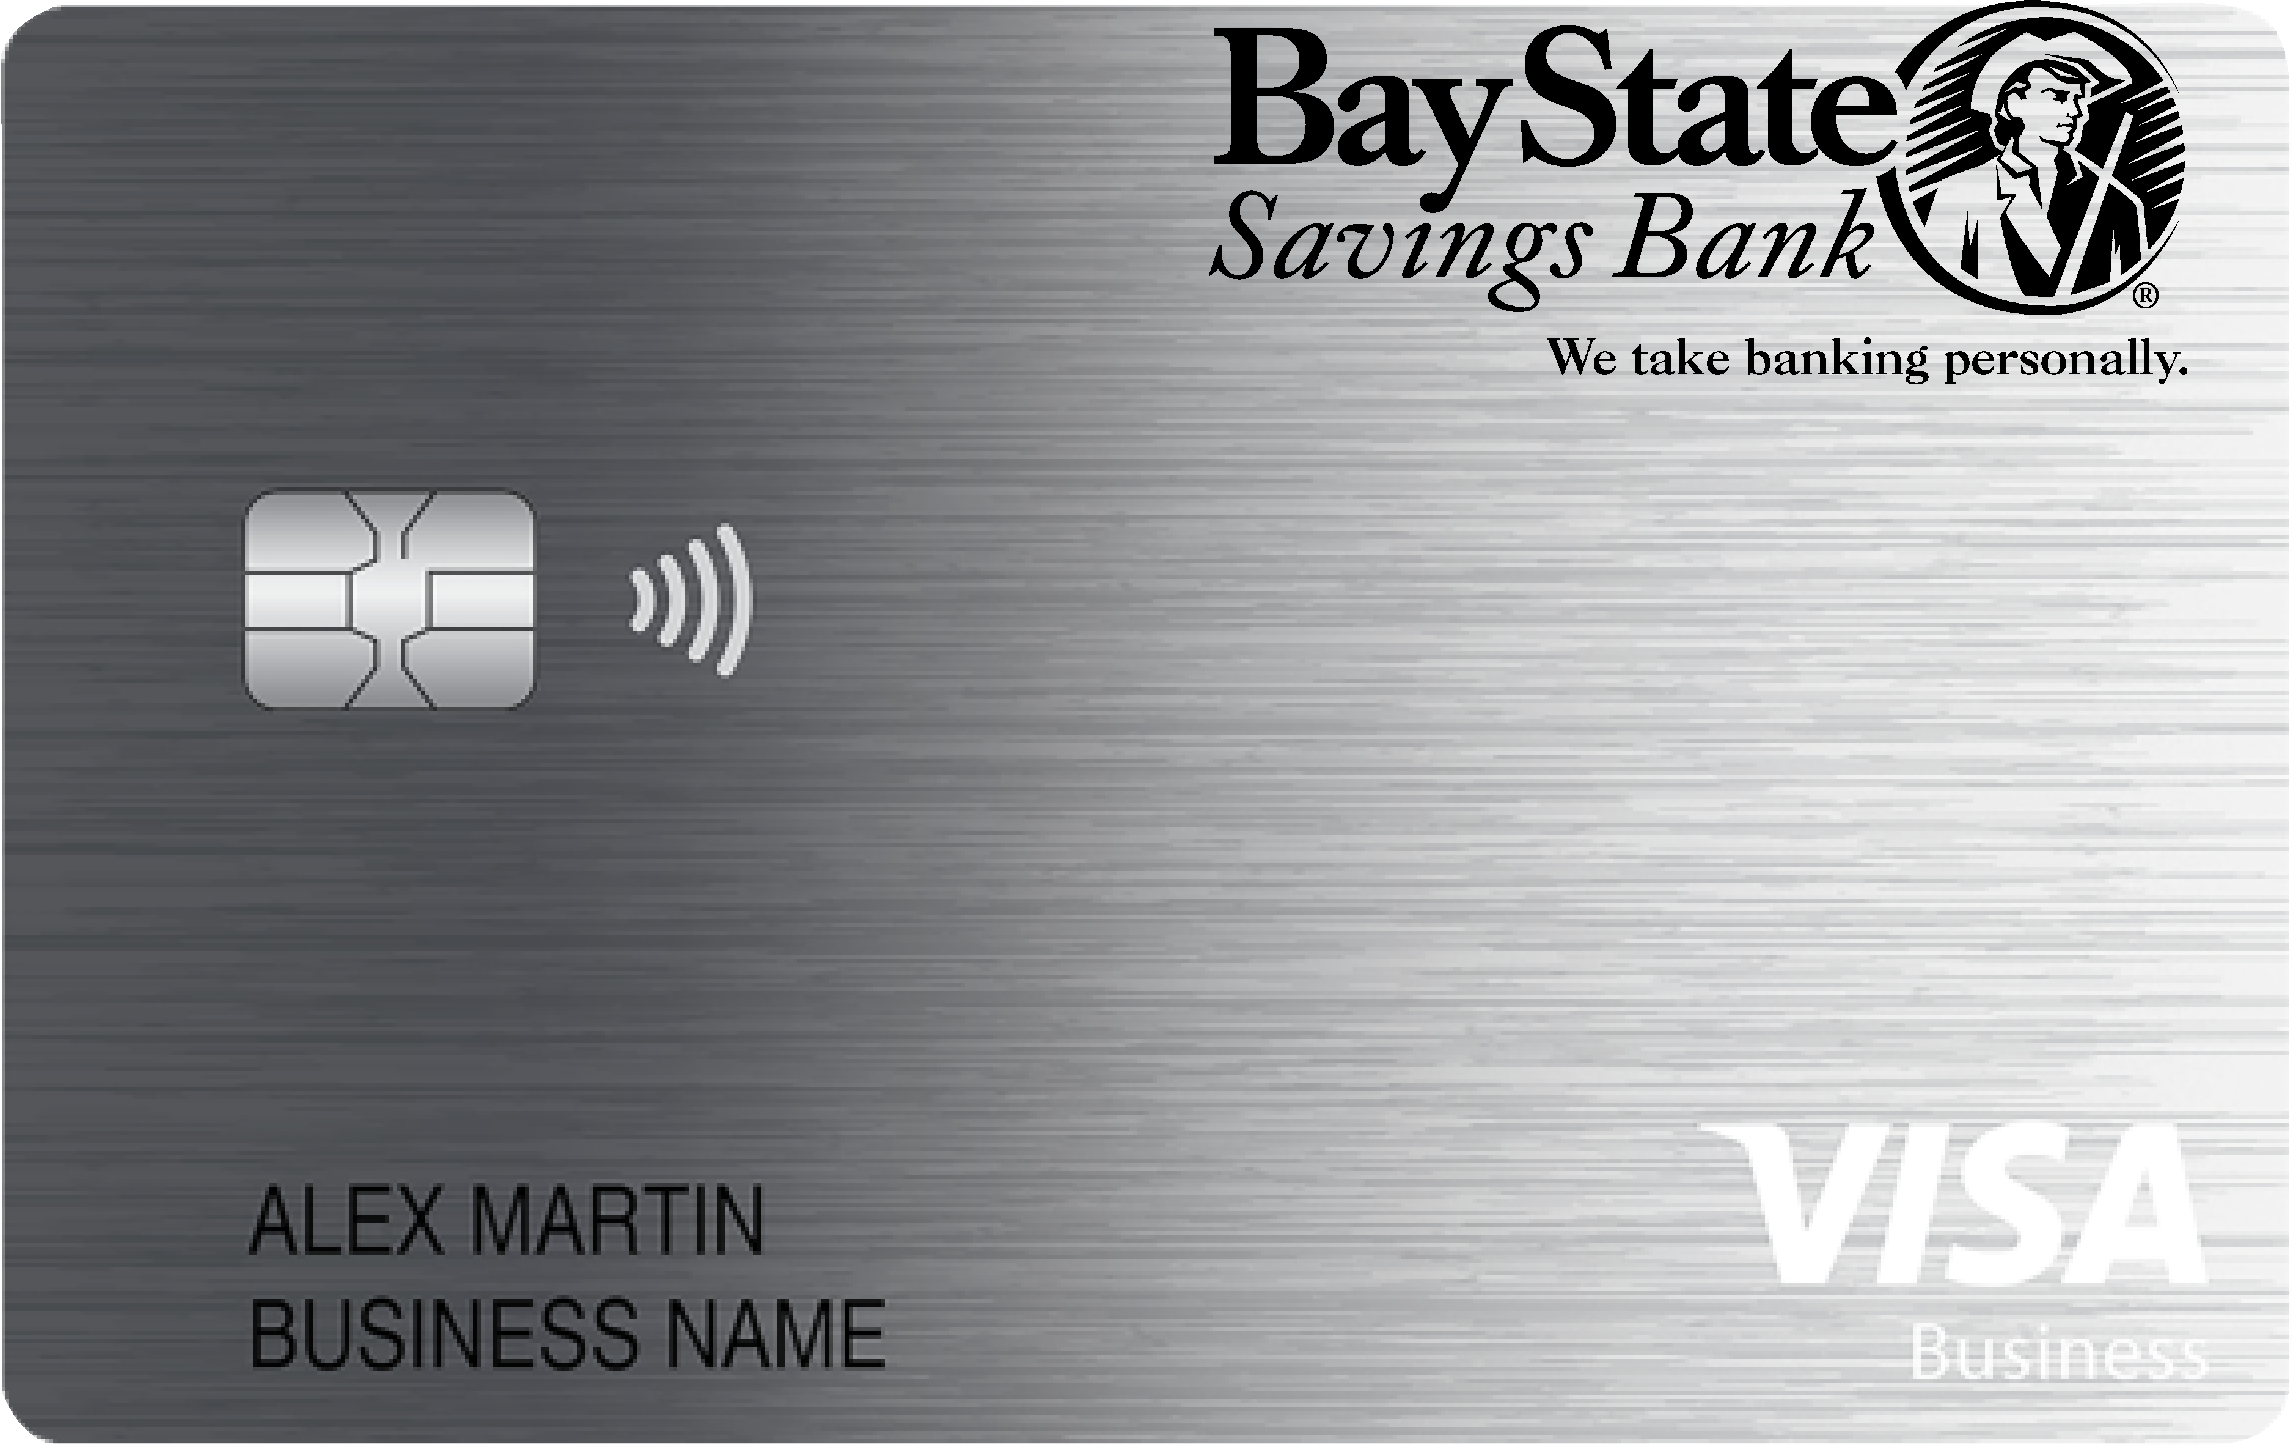 Bay State Savings Bank